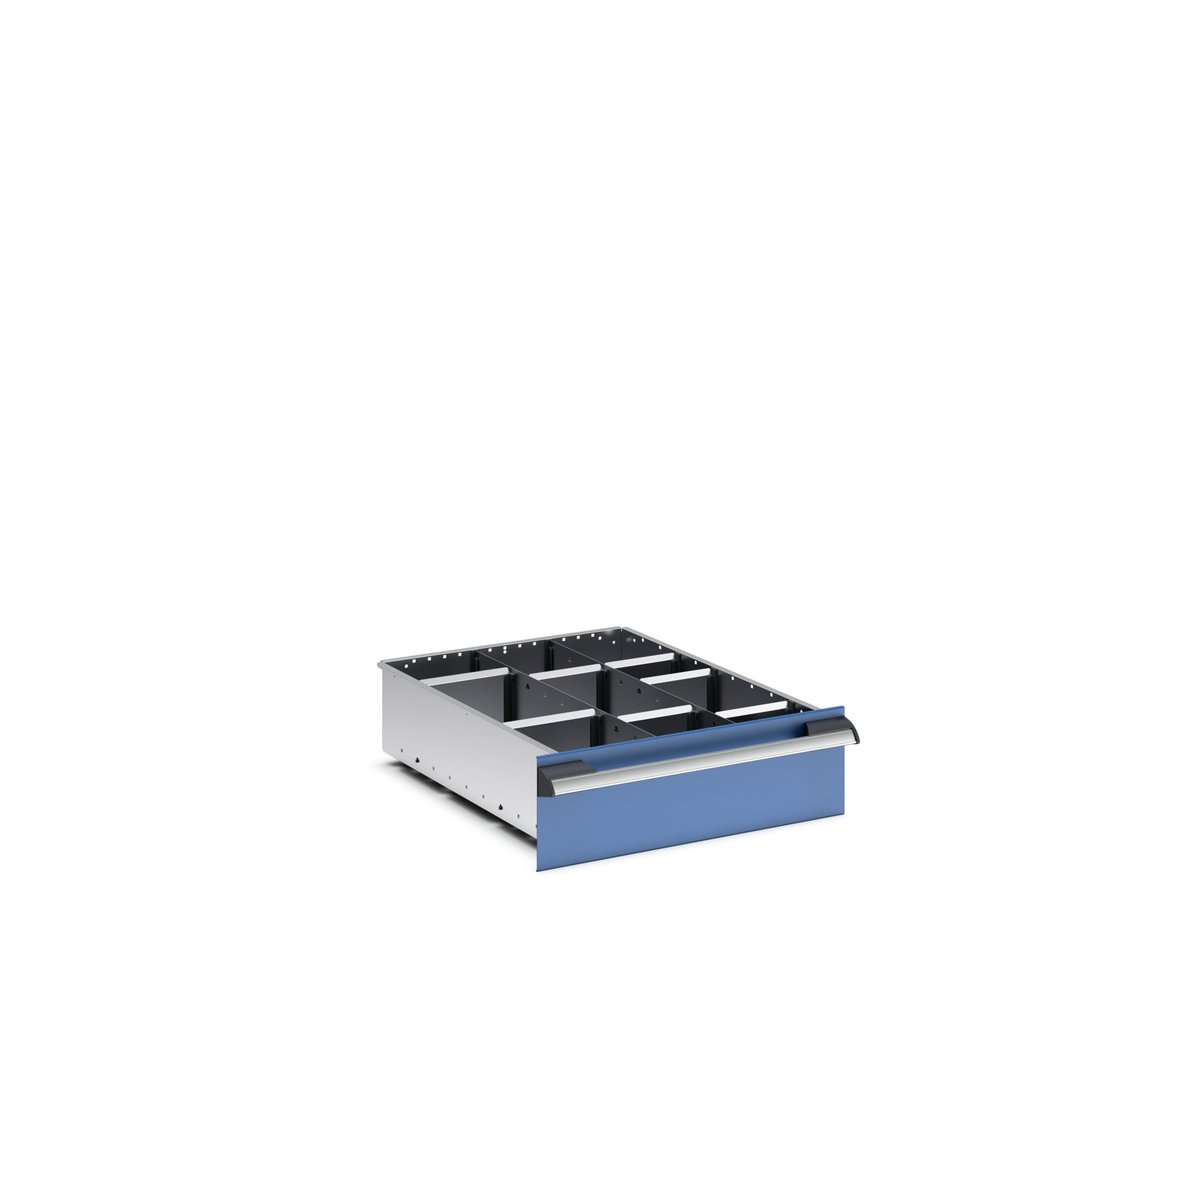 43020716.51 - cubio adjustable divider kit